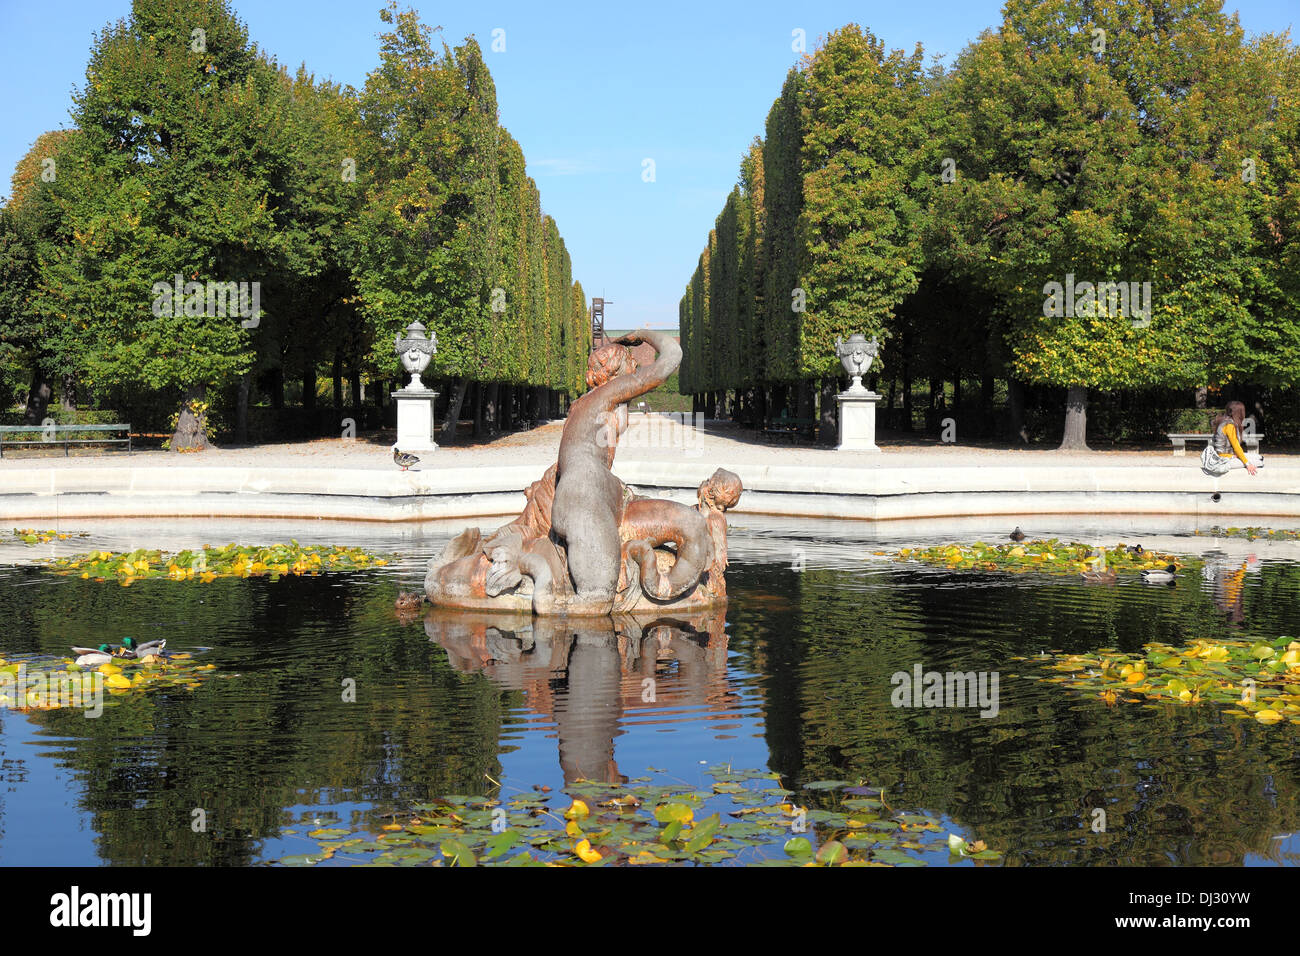 Fountain in Schonbrunn park, Vienna, Austria. Stock Photo